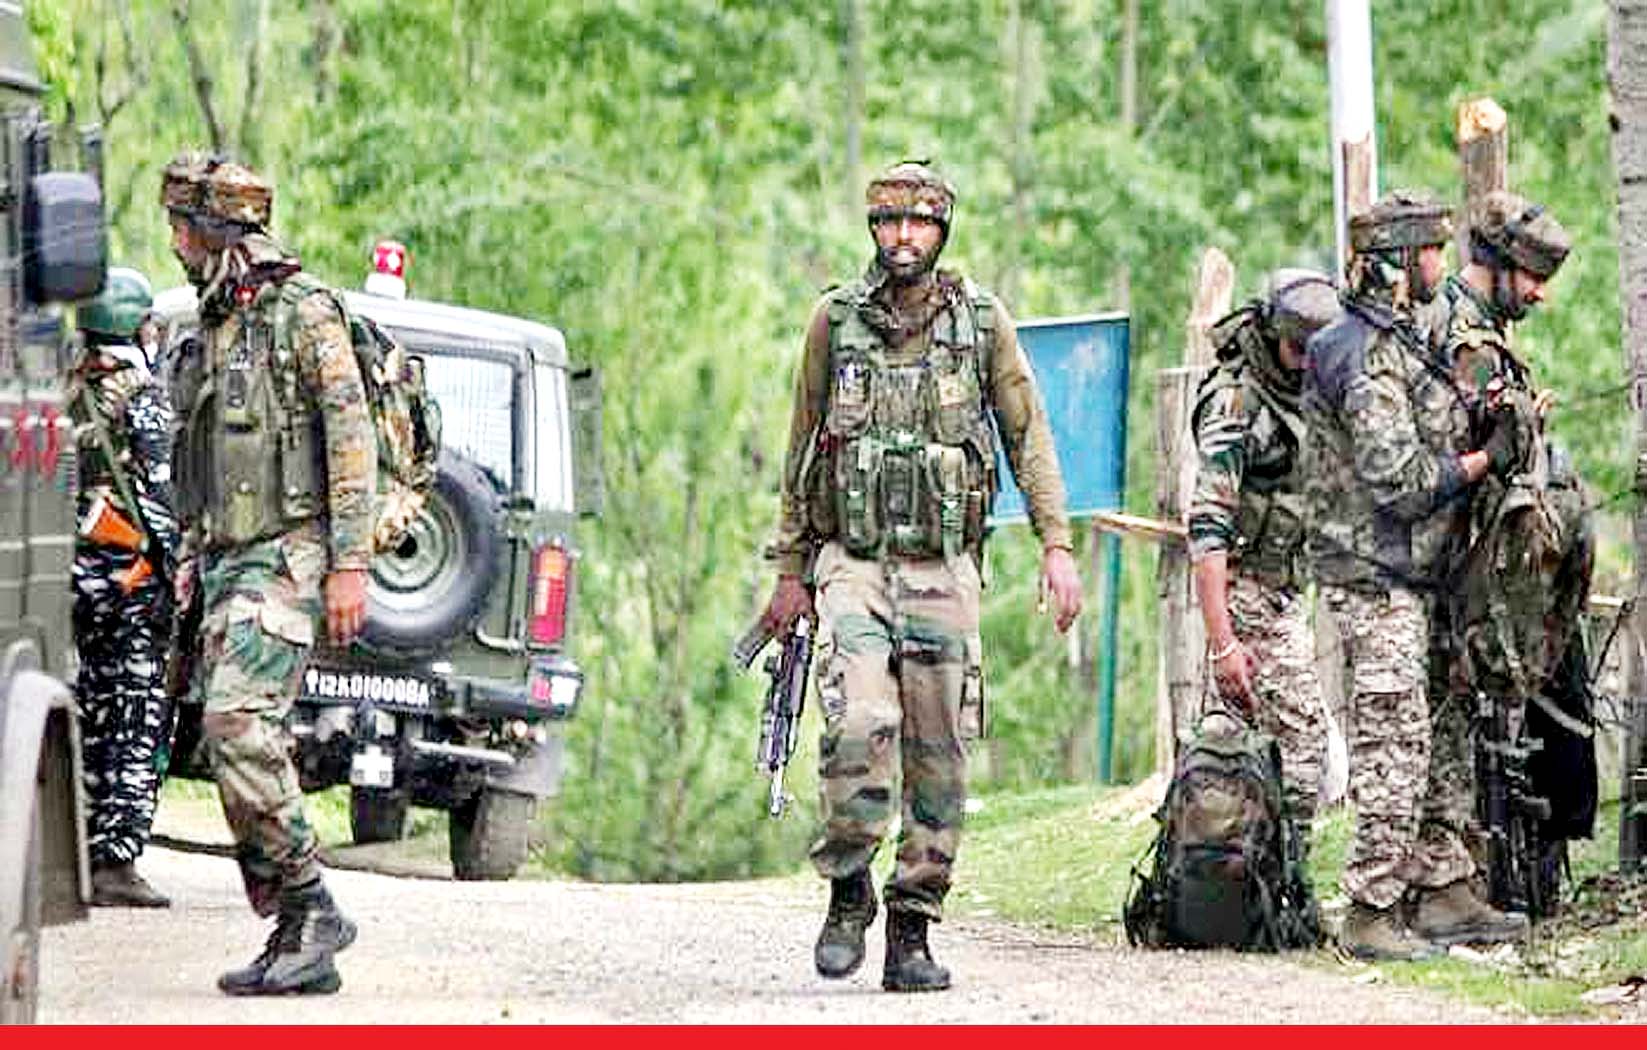 जम्मू-कश्मीरः राजौरी में आर्मी कैंप पर आत्मघाती हमला, दो आतंकवादी ढेर और तीन जवान भी शहीद